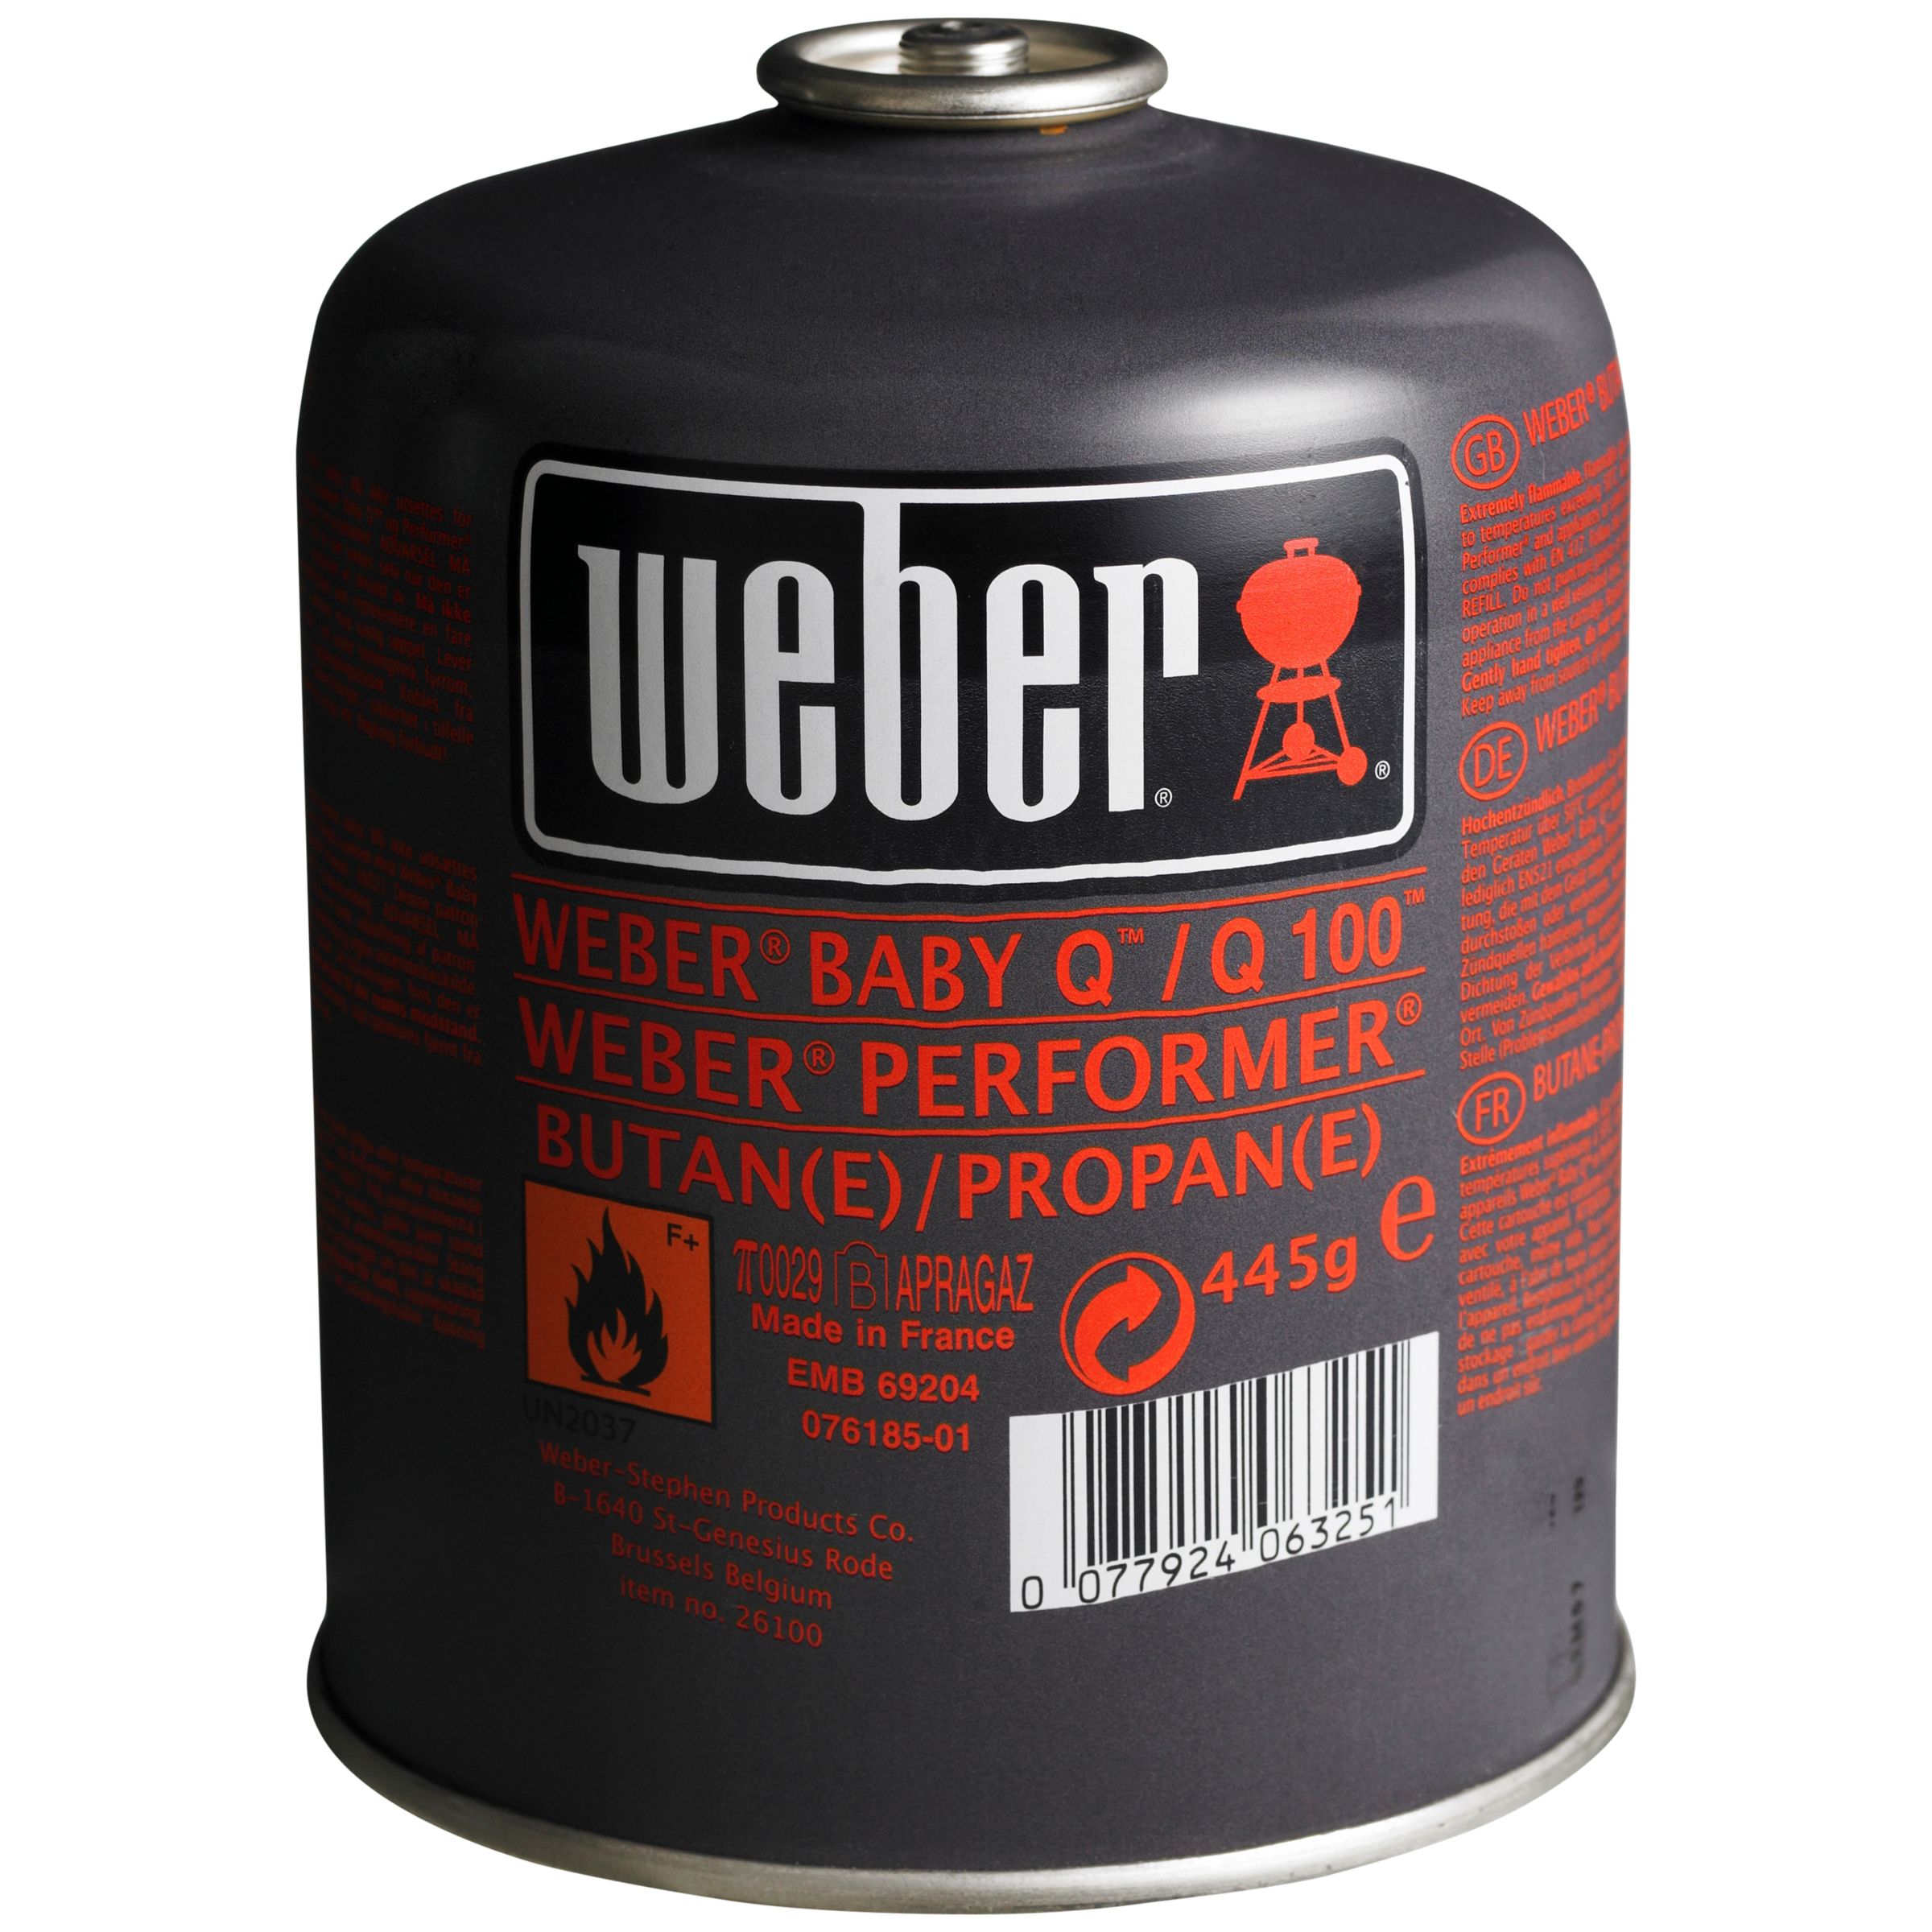 Weber Portable Barbecue Gas Bottle, 445g